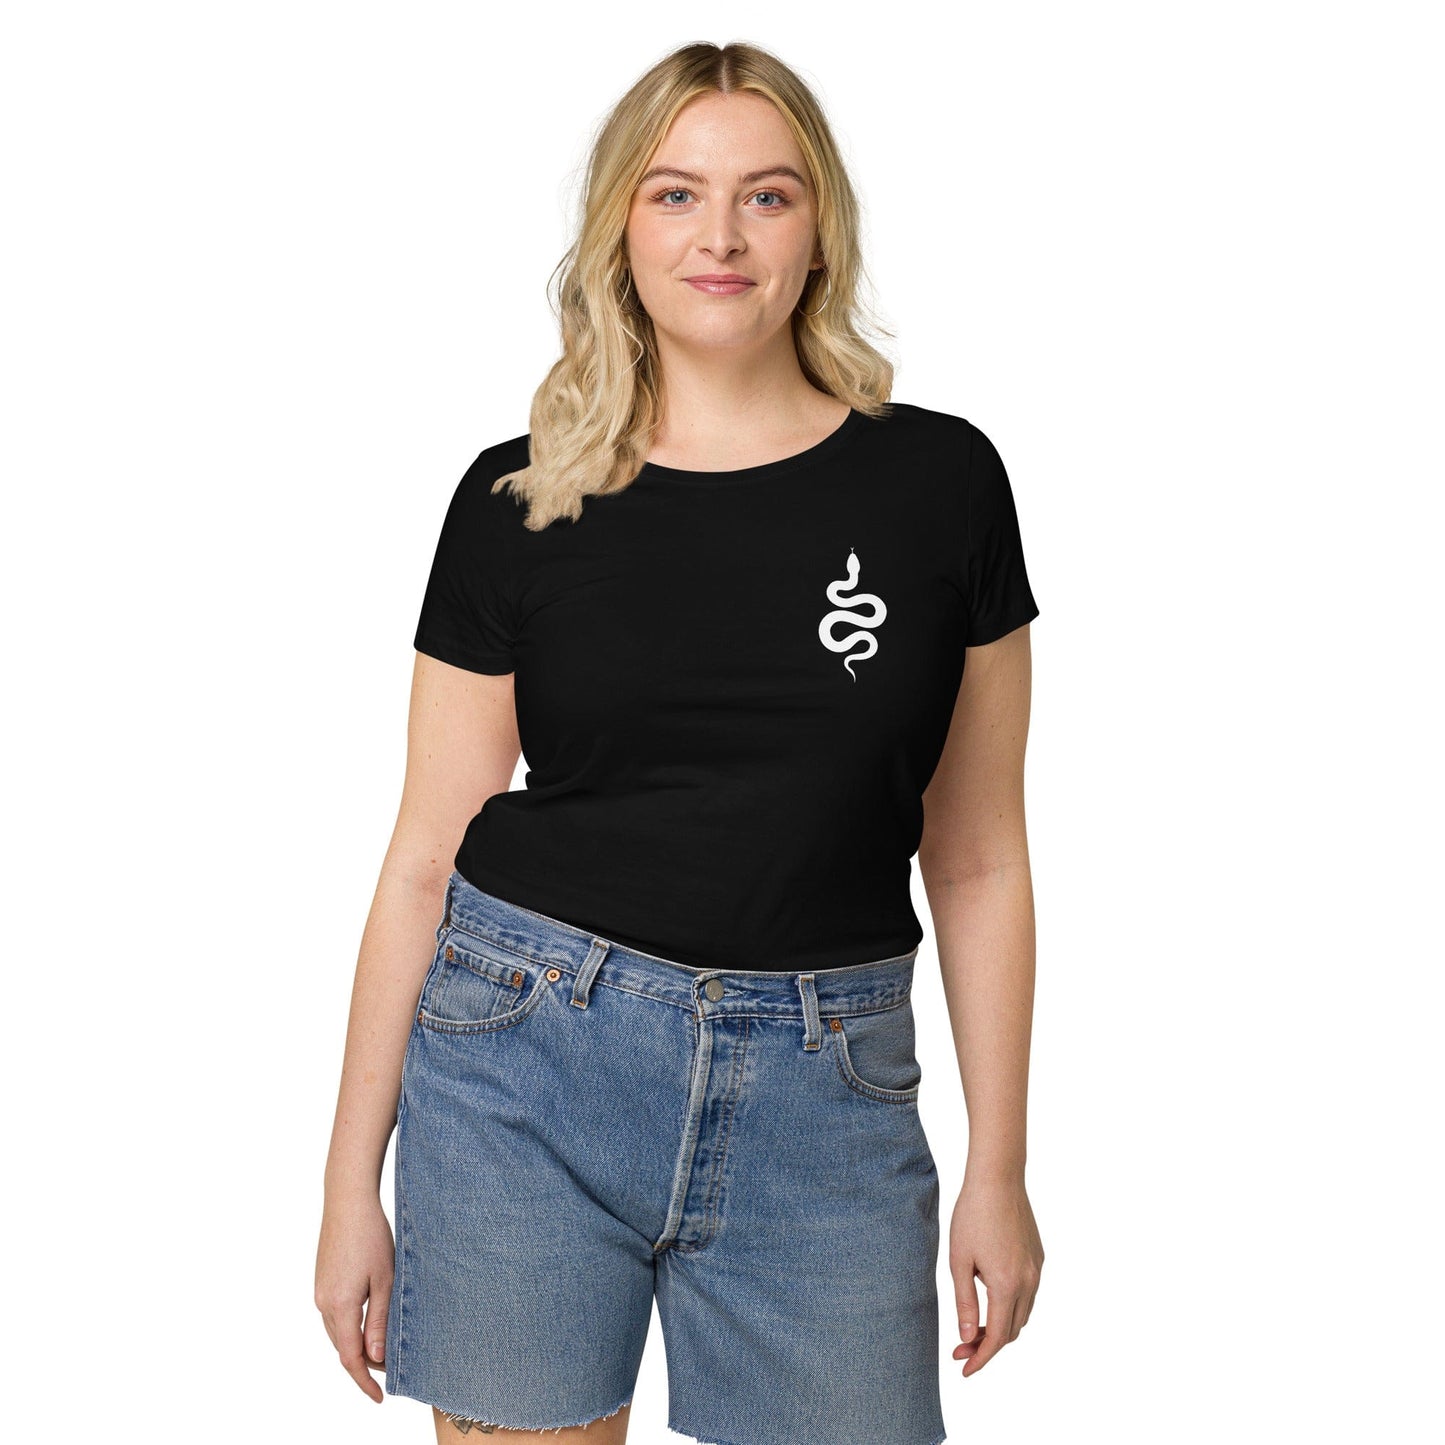 Women’s t-shirt "BLACK SNAKE"